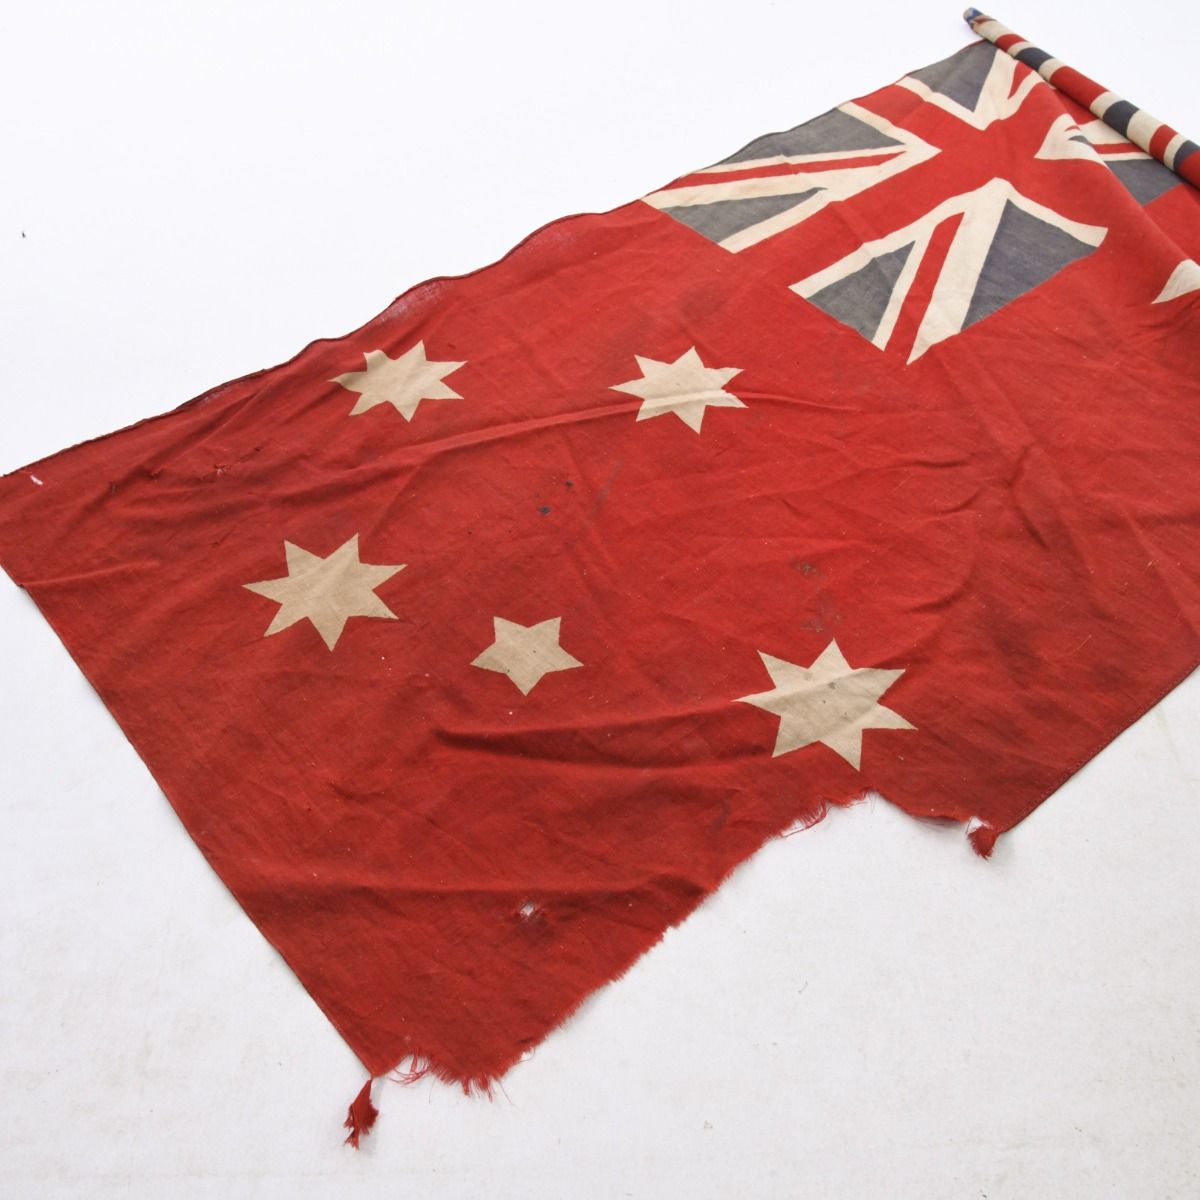 1907 Australian Red Ensign Merchant Navy Flag